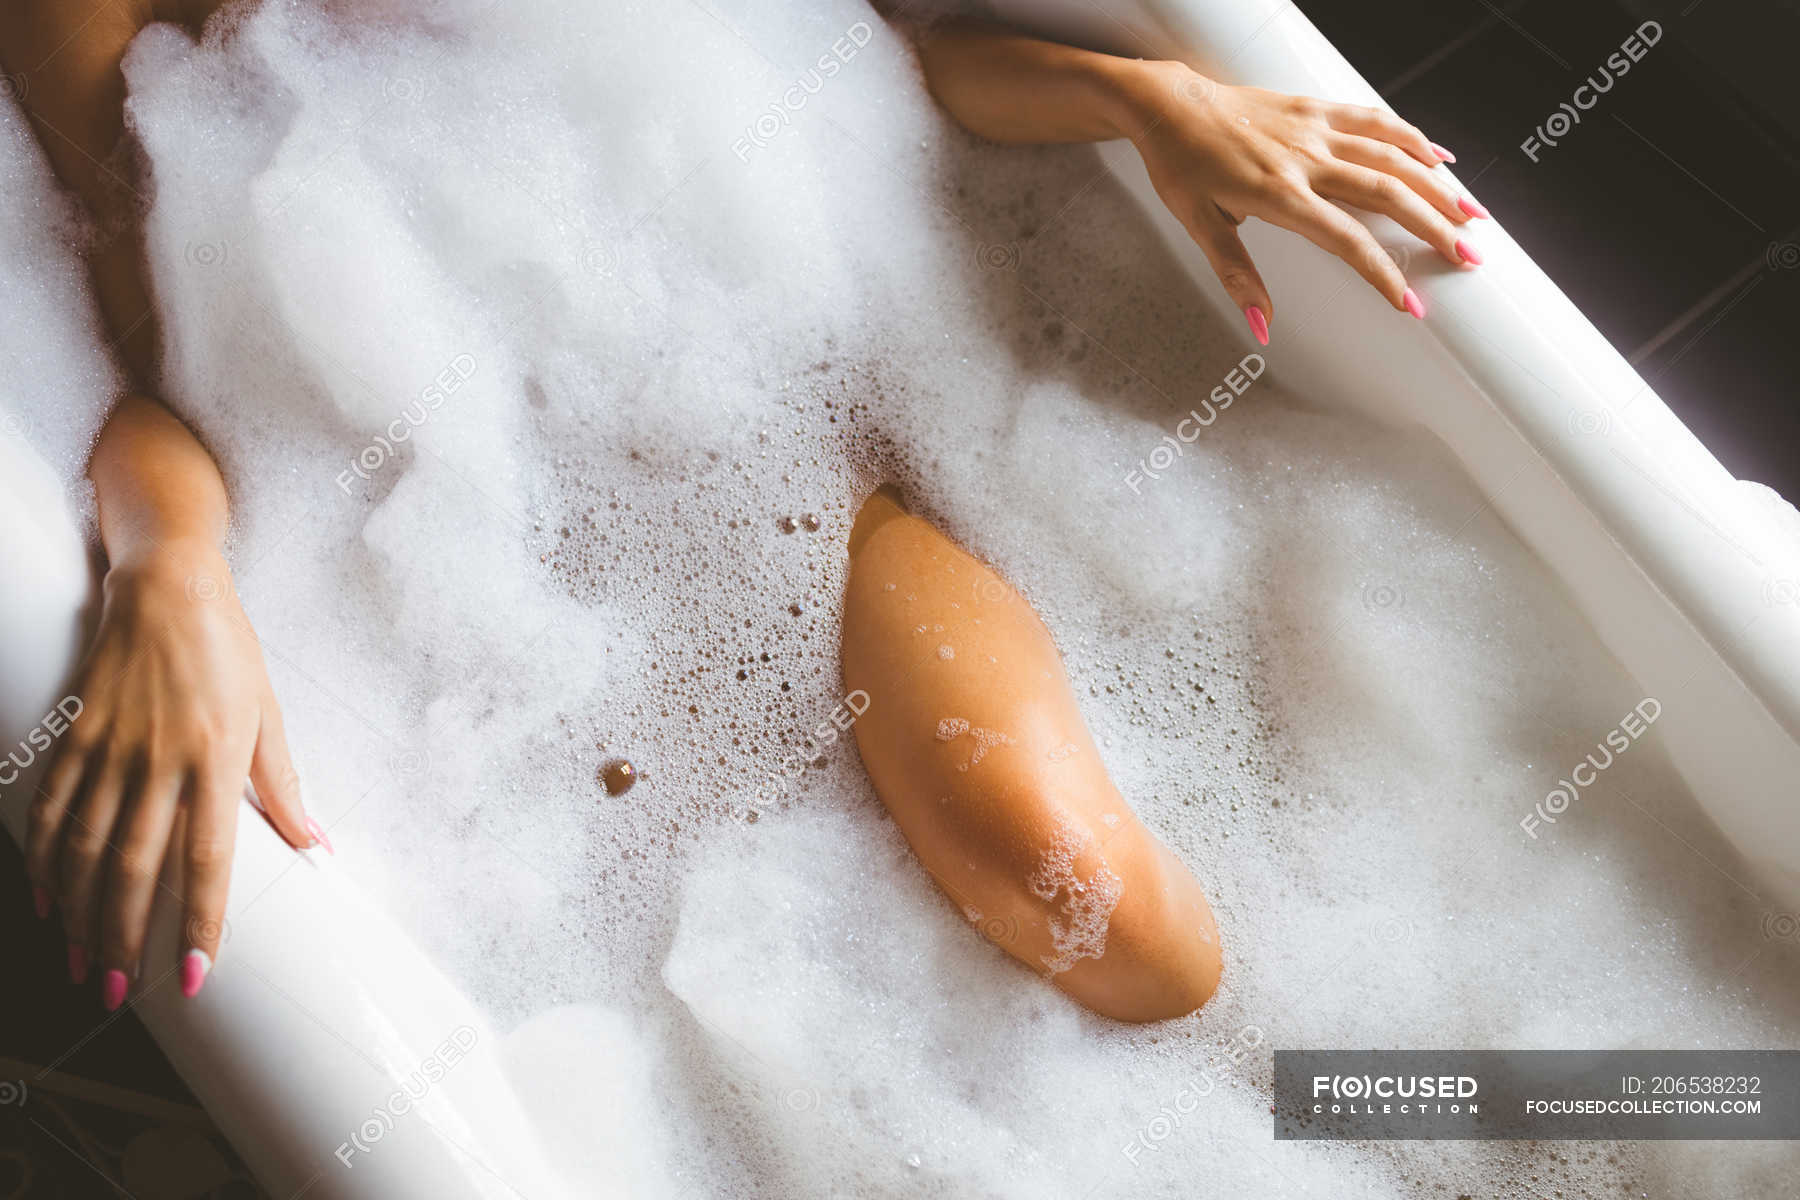 Фото девушки в ванной без верхней одежды